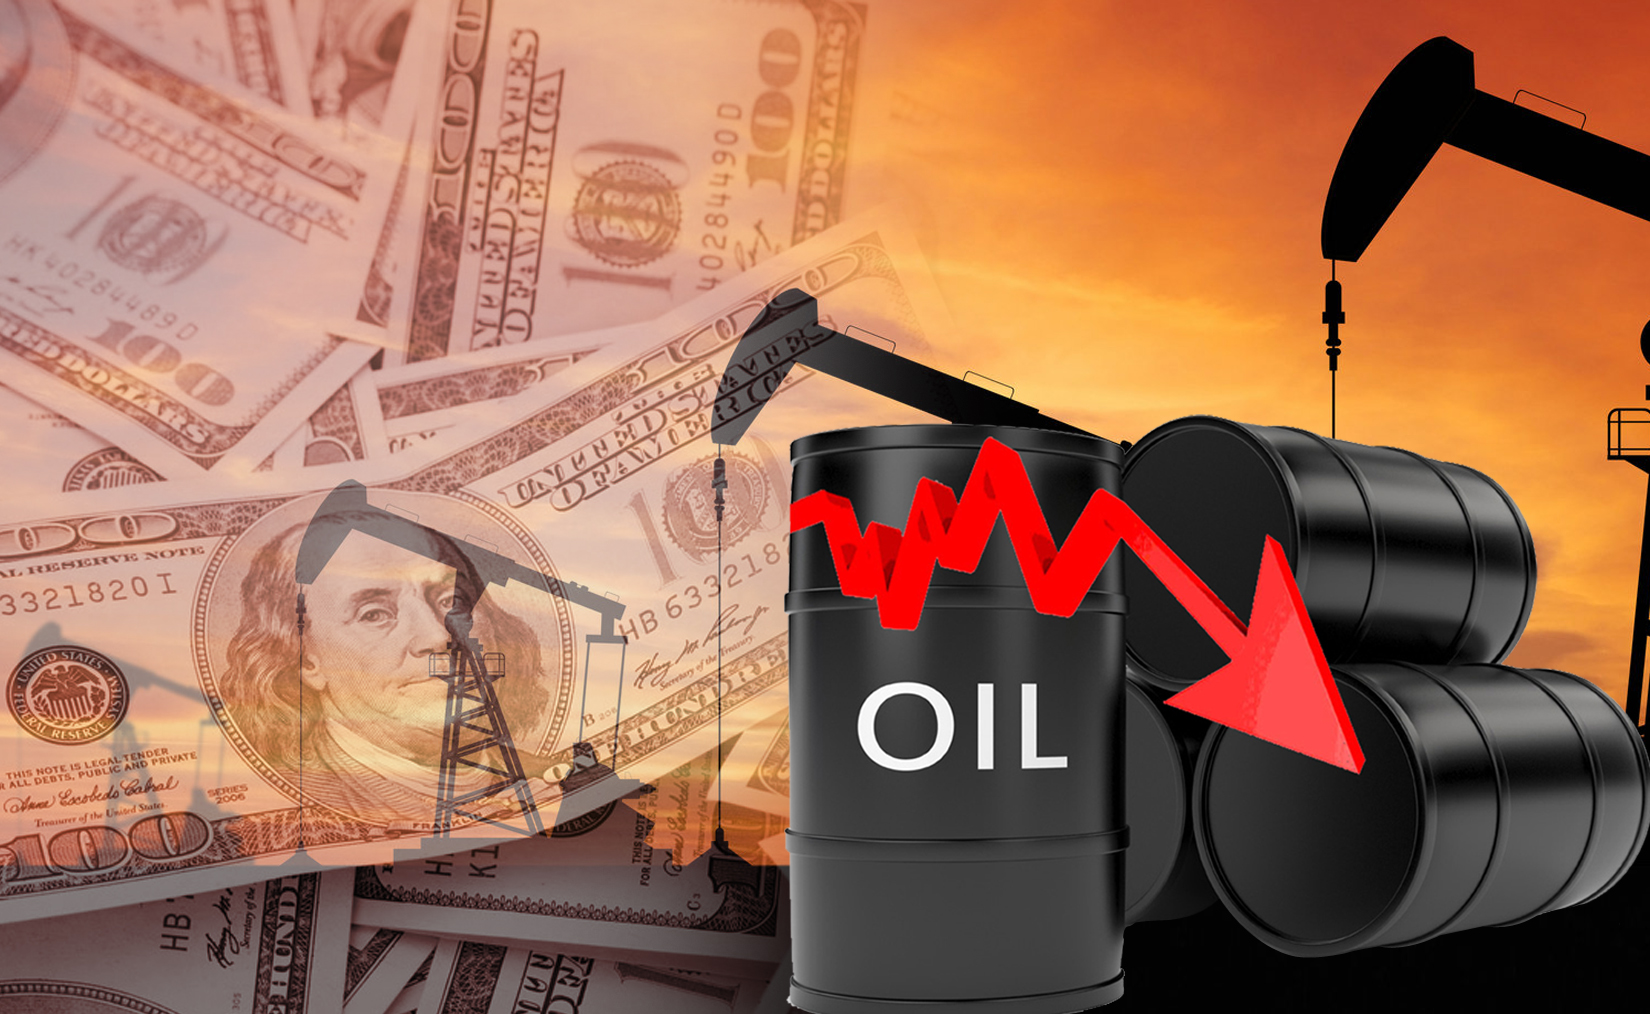 Kuwait oil price went down to USD 68.92 pb                                                                                                                                                                                                                